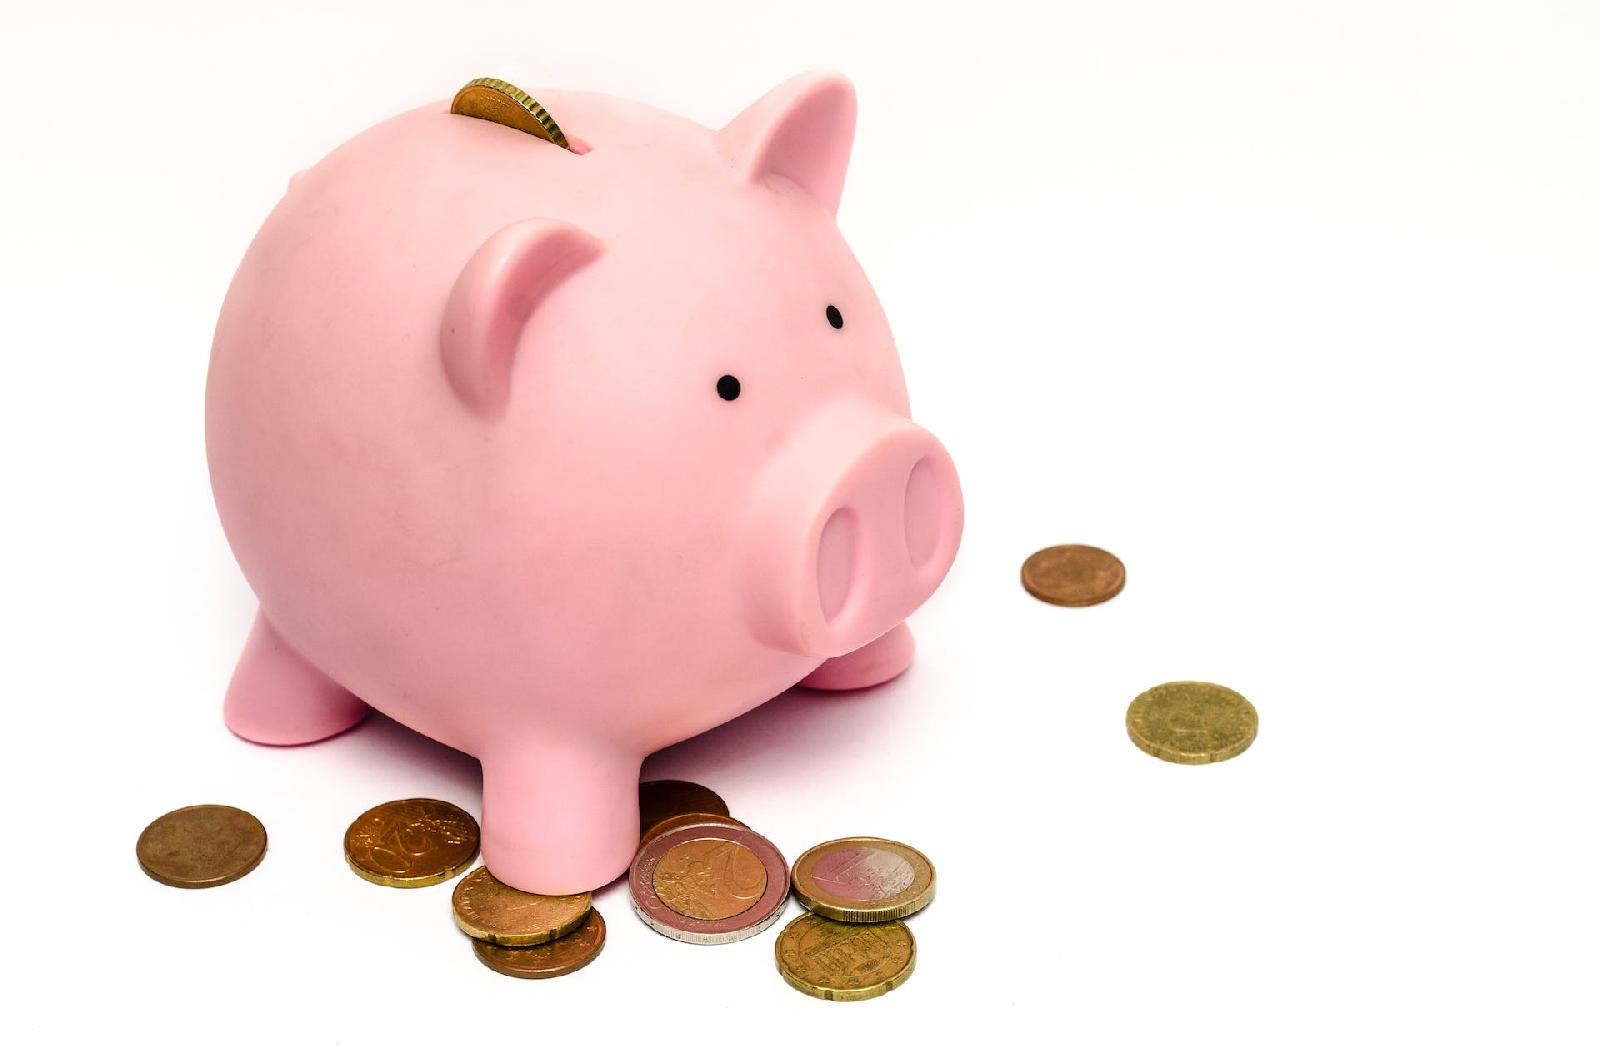 Faire ses comptes et economiser chaque mois : nos conseils pratiques pour une meilleure gestion financiere